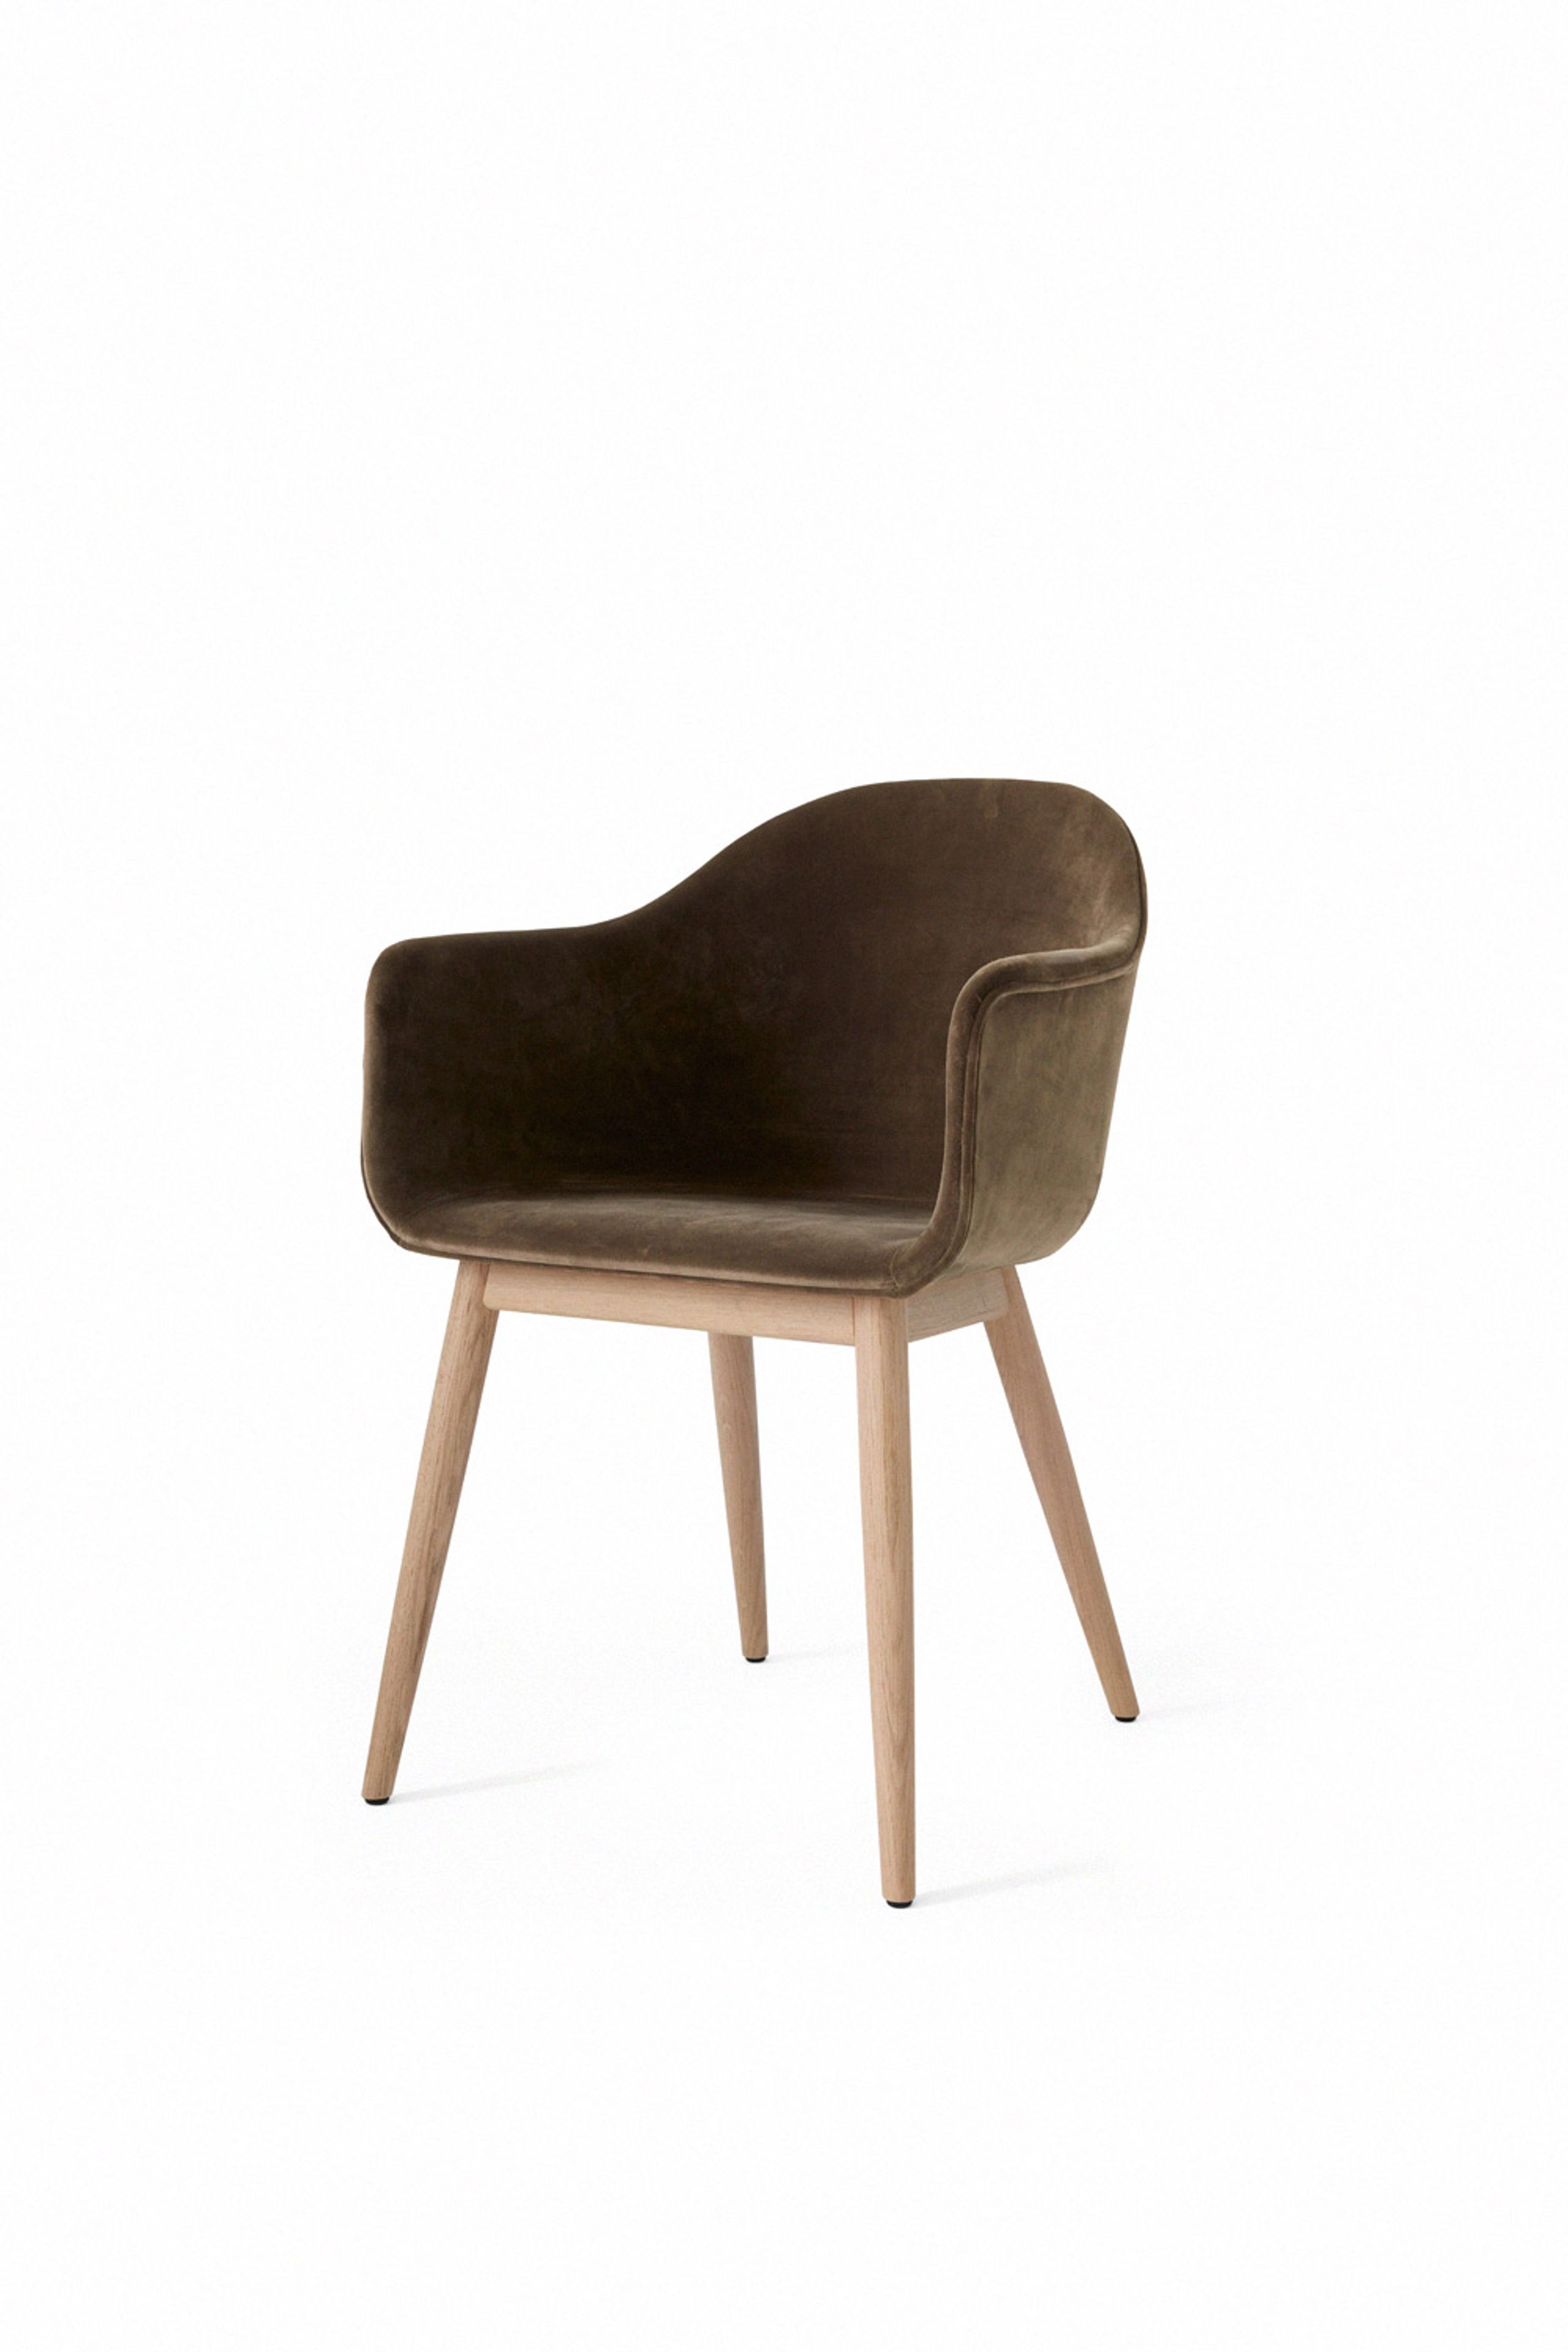 MENU - Stuhl - Harbour Dining Chair / Natural Oak Base - Upholstery: City Velvet CA 7832/078